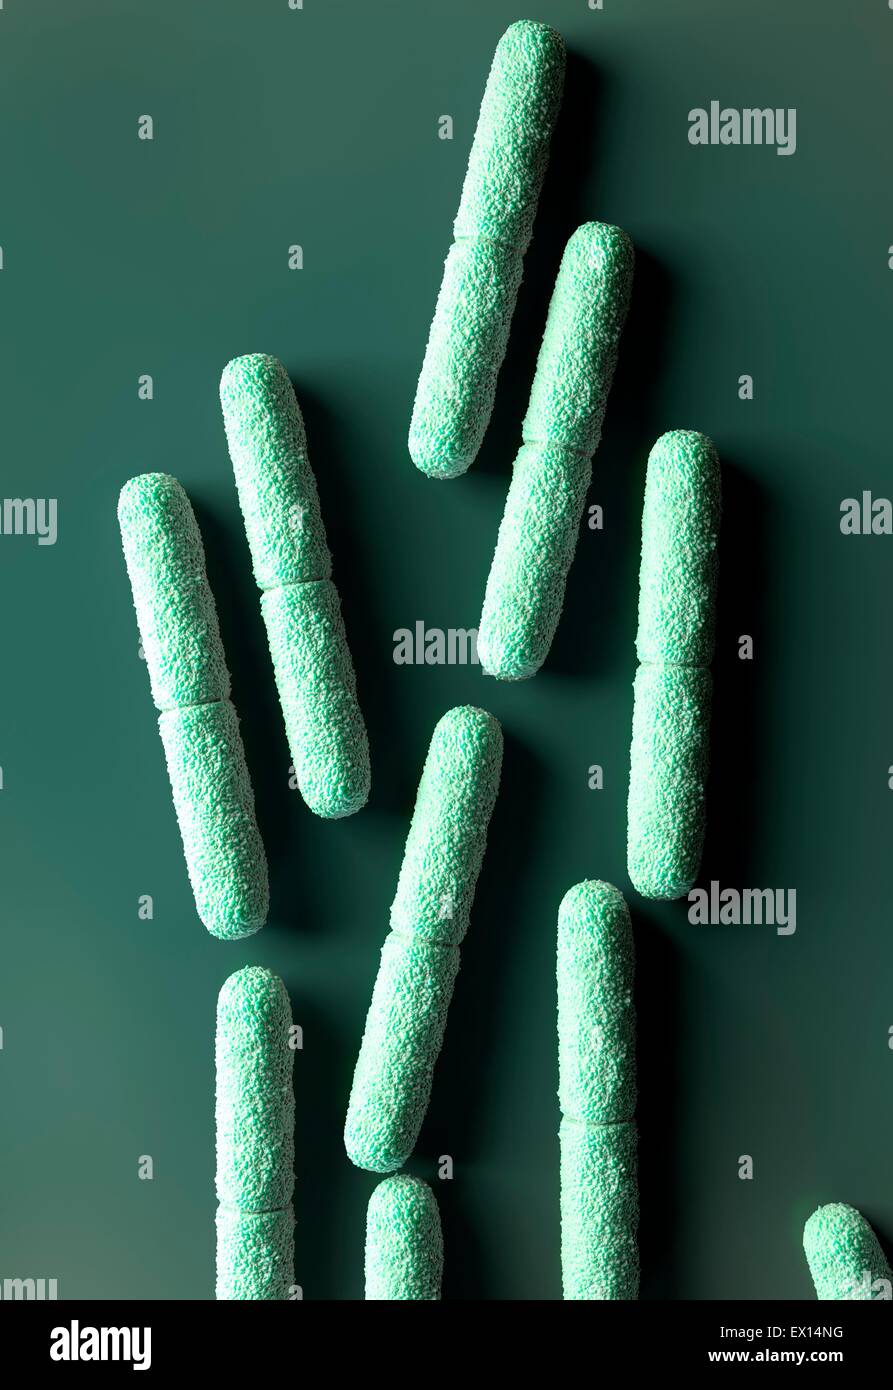 Clostridium botulinum bacteria, illustration. Stock Photo